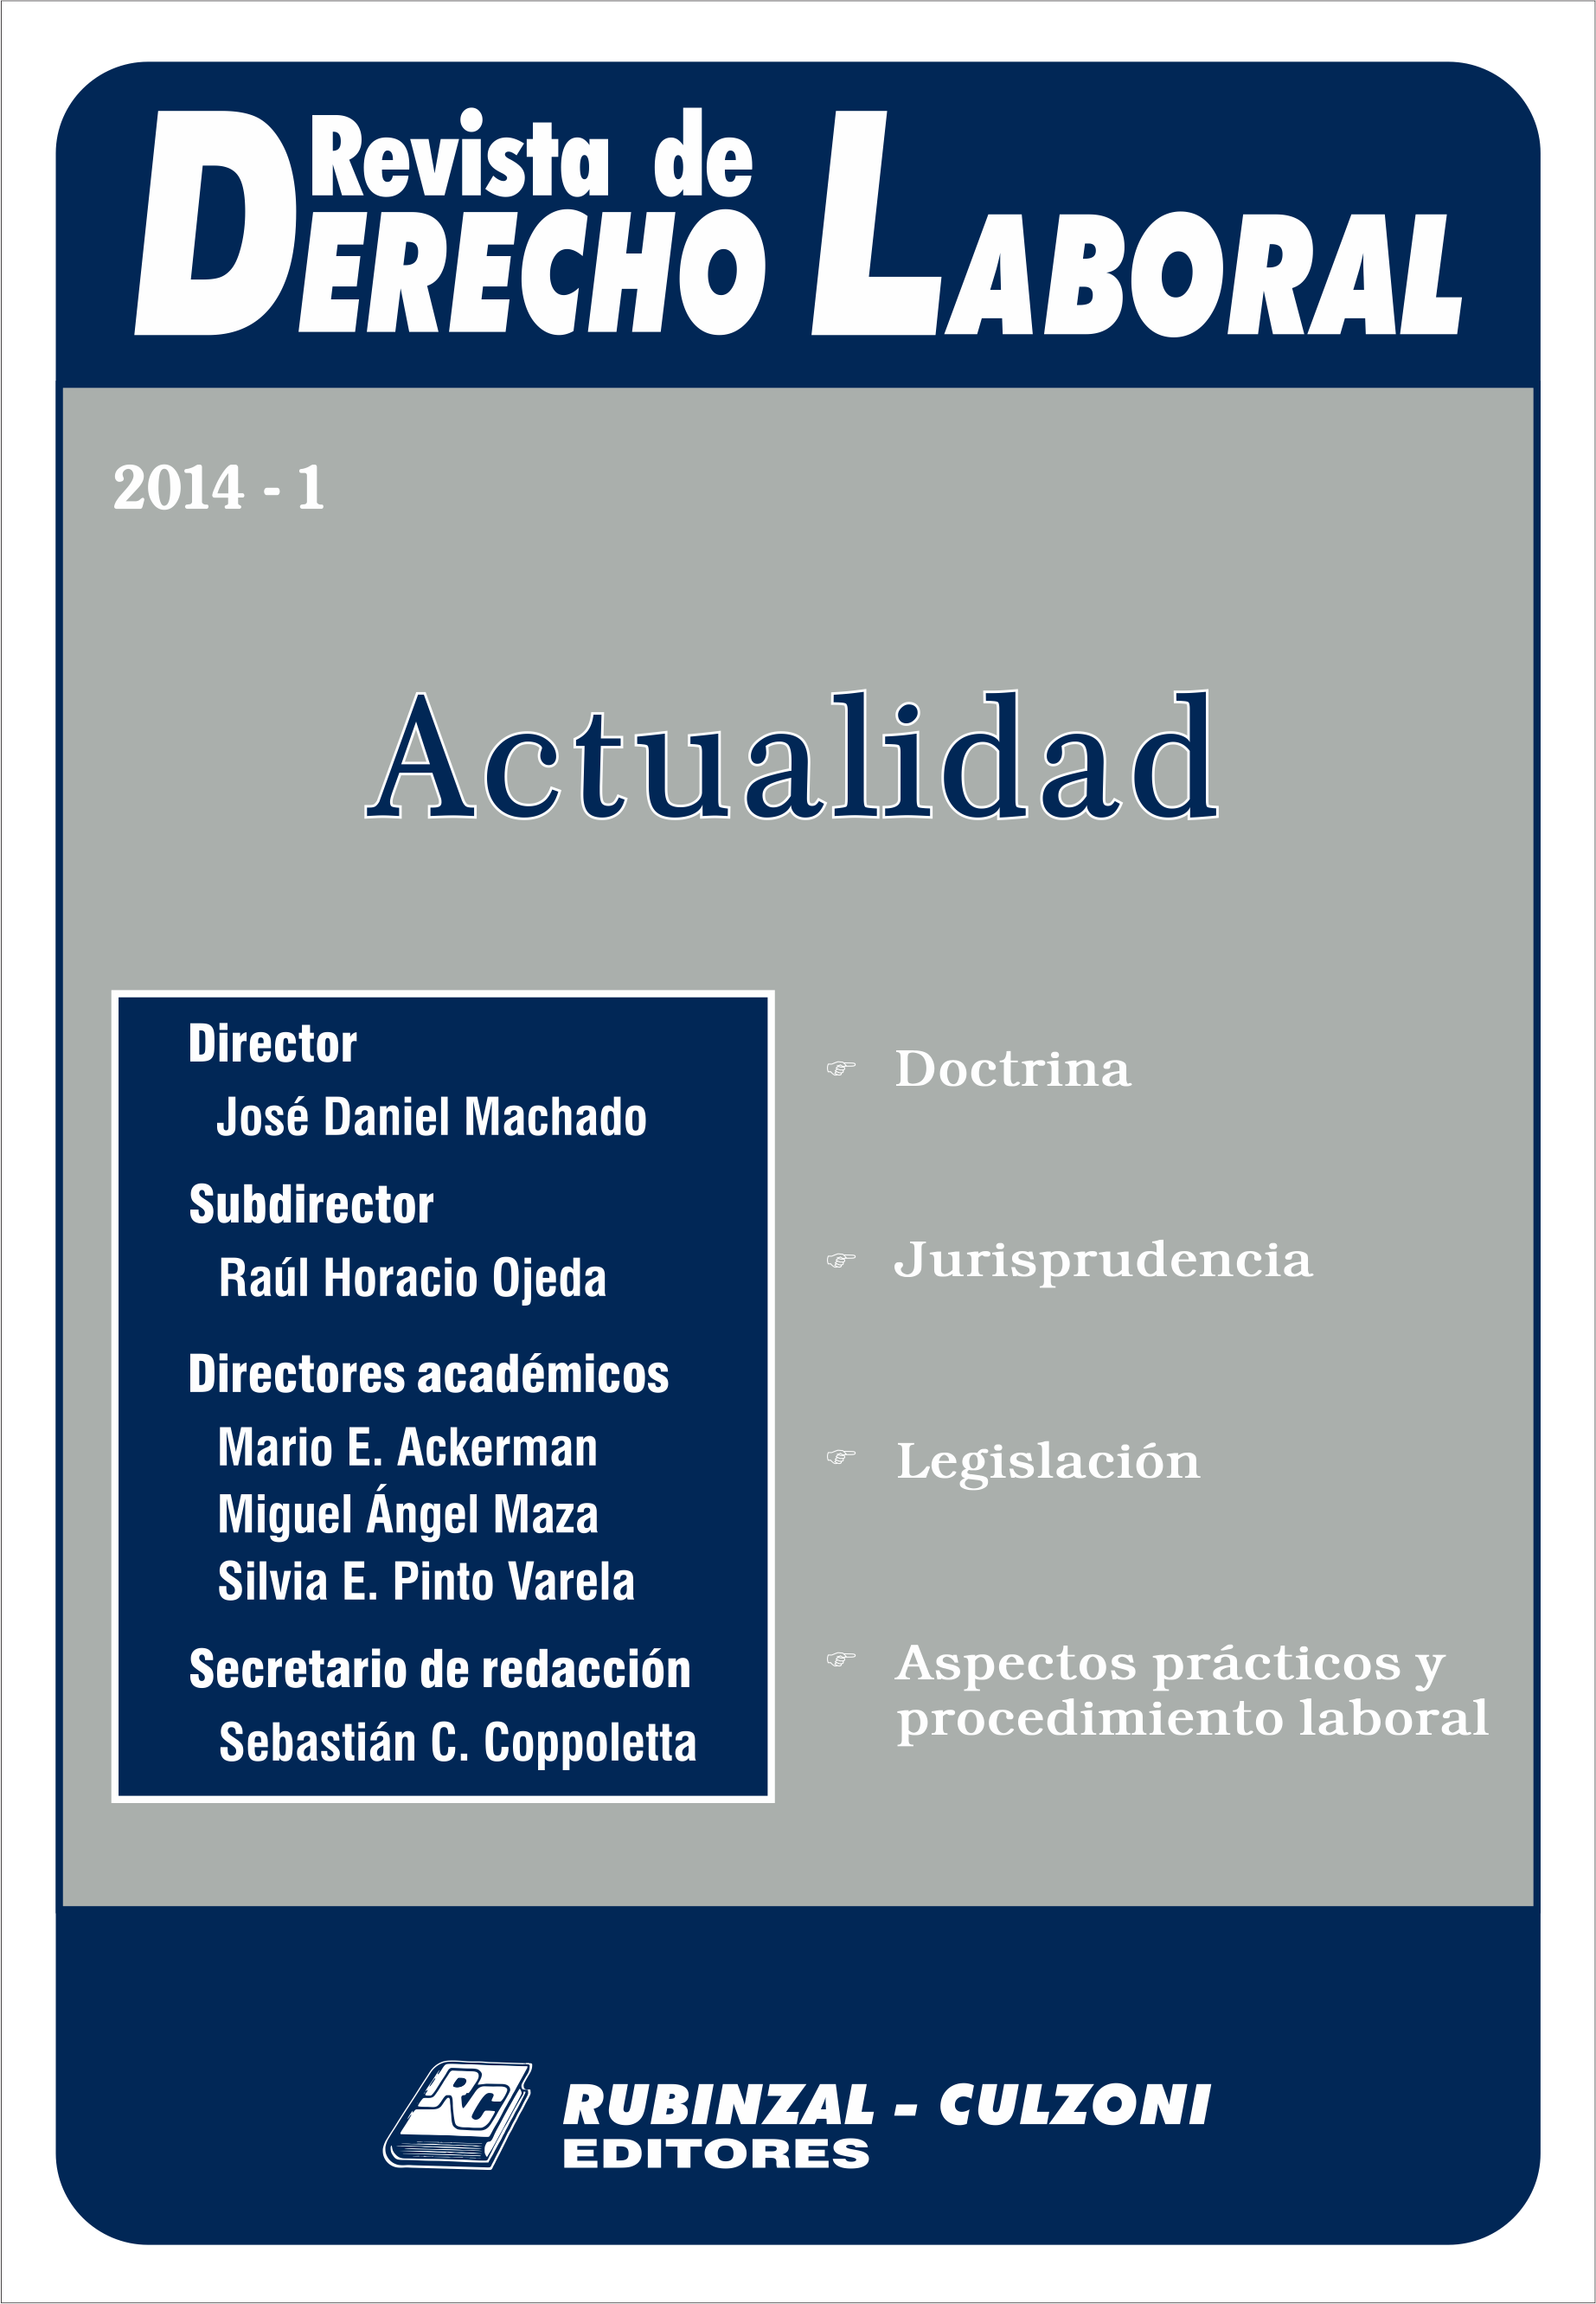 Revista de Derecho Laboral Actualidad - Año 2014 - 1